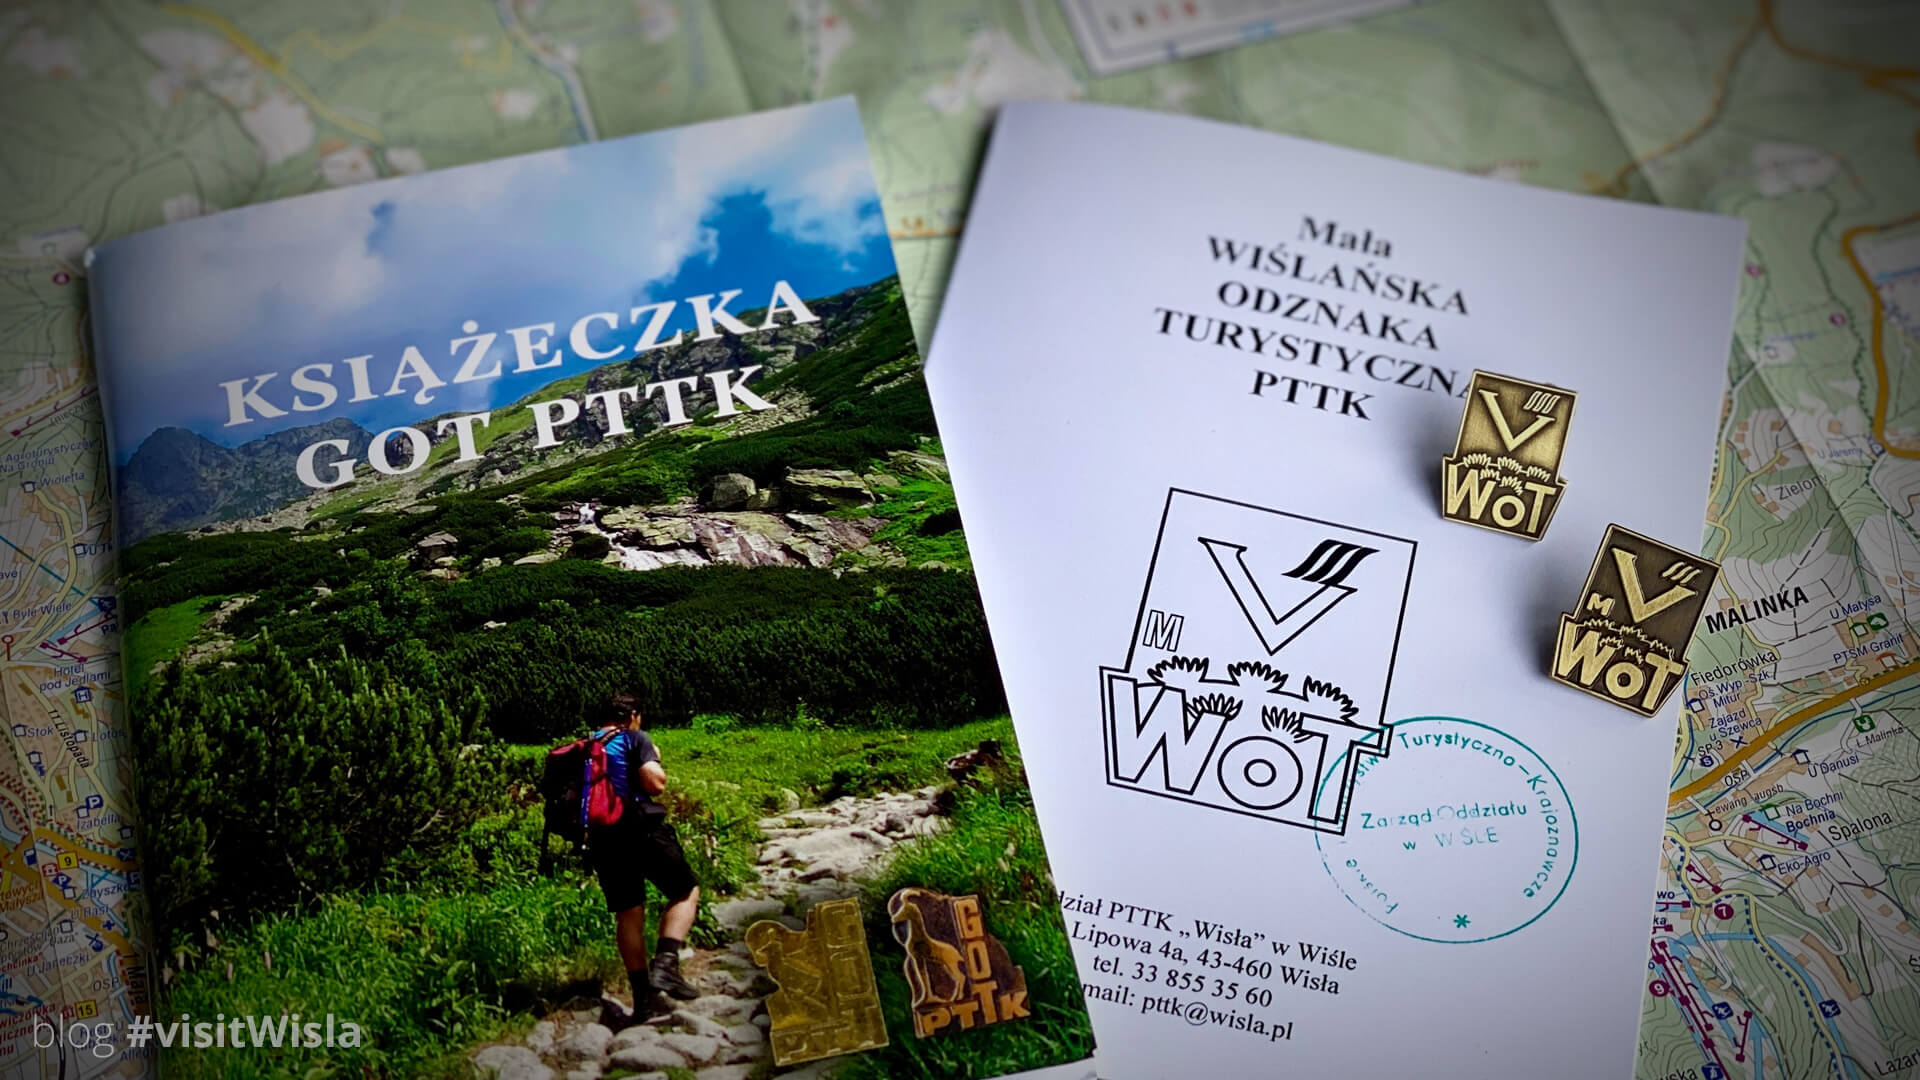 Wiślańska Odznaka Turystyczna i Mała Wiślańska Odznaka Turystyczna to pamiątki dla wytrwałych.